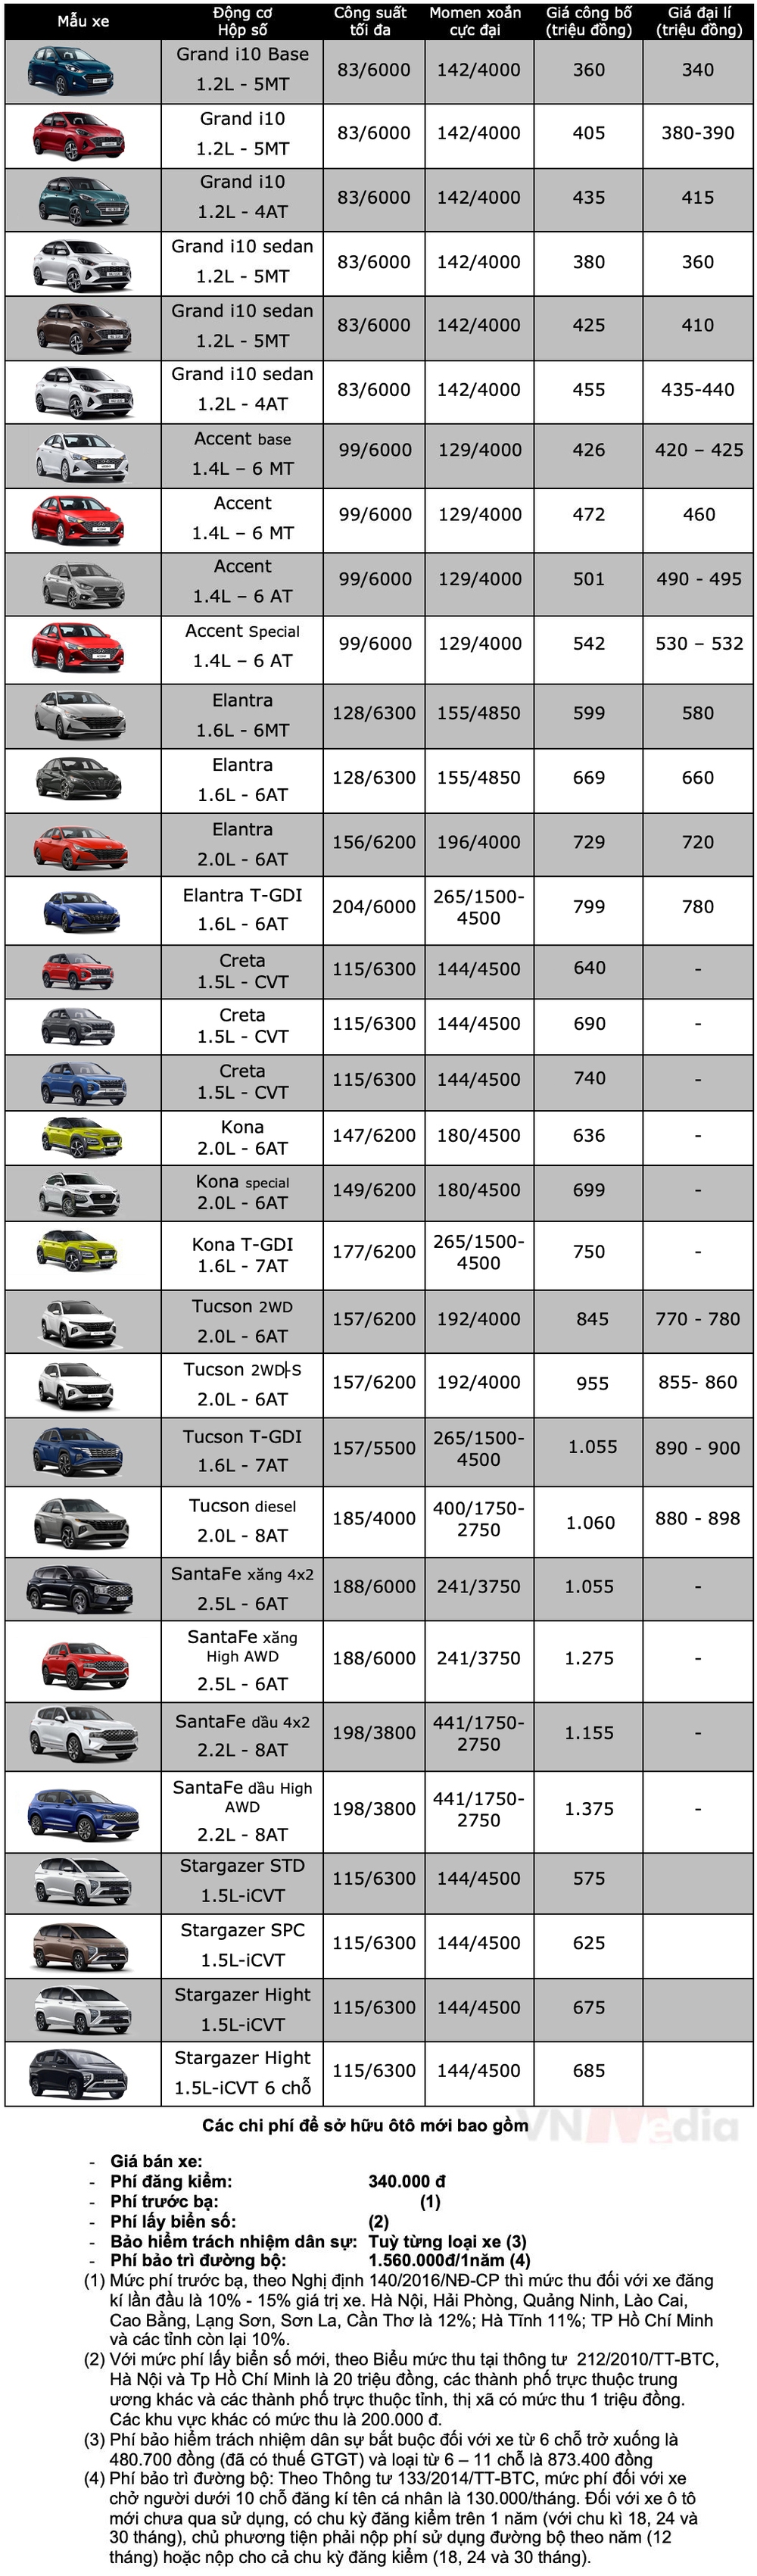 Bảng giá xe Hyundai tháng 6: Hyundai Tucson được giảm 85 triệu đồng - Ảnh 2.